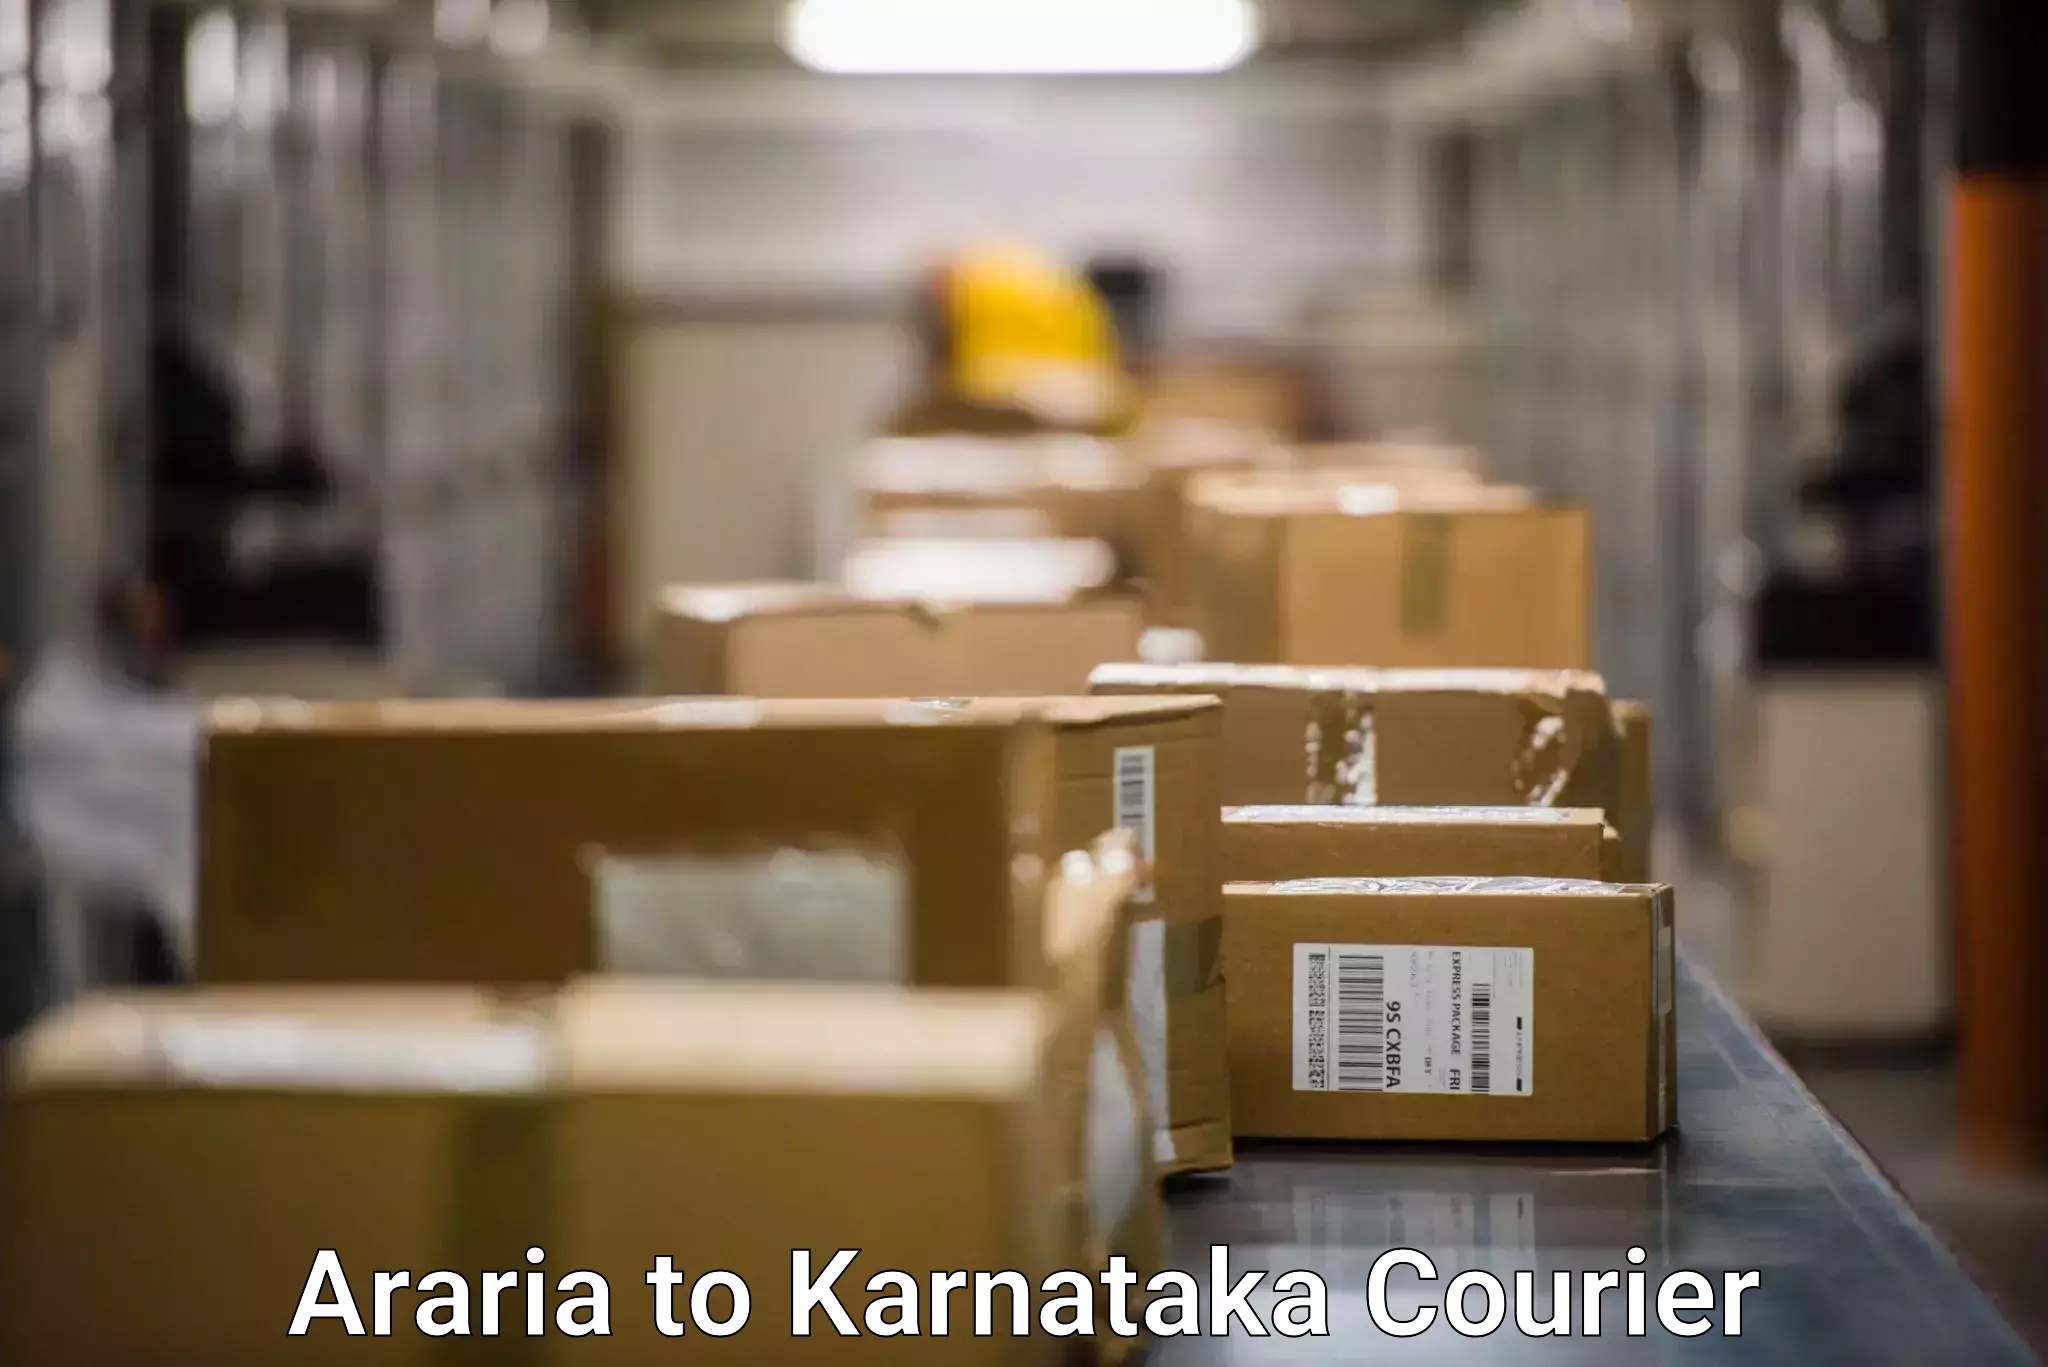 Delivery service partnership Araria to Channarayapatna